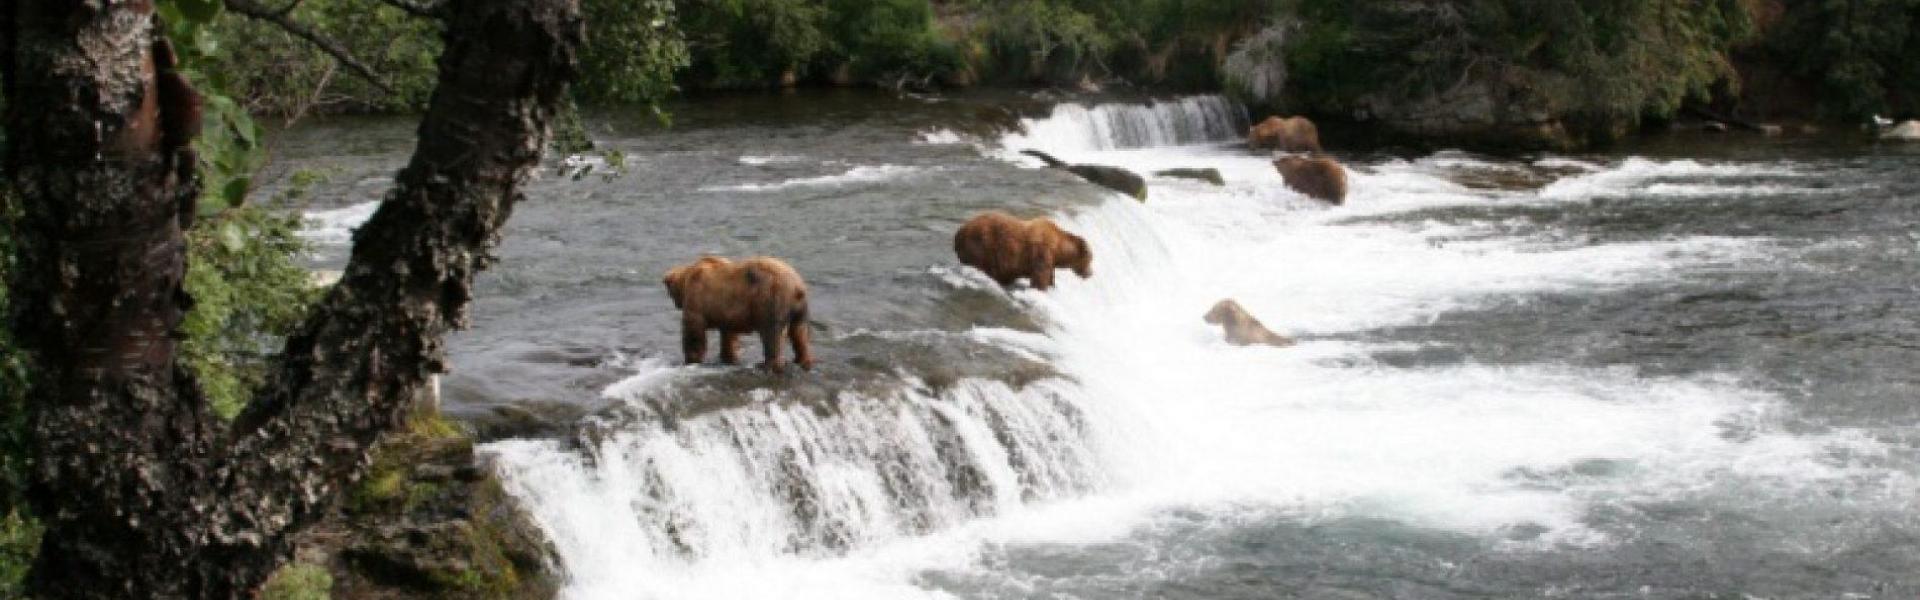 Alaska bears